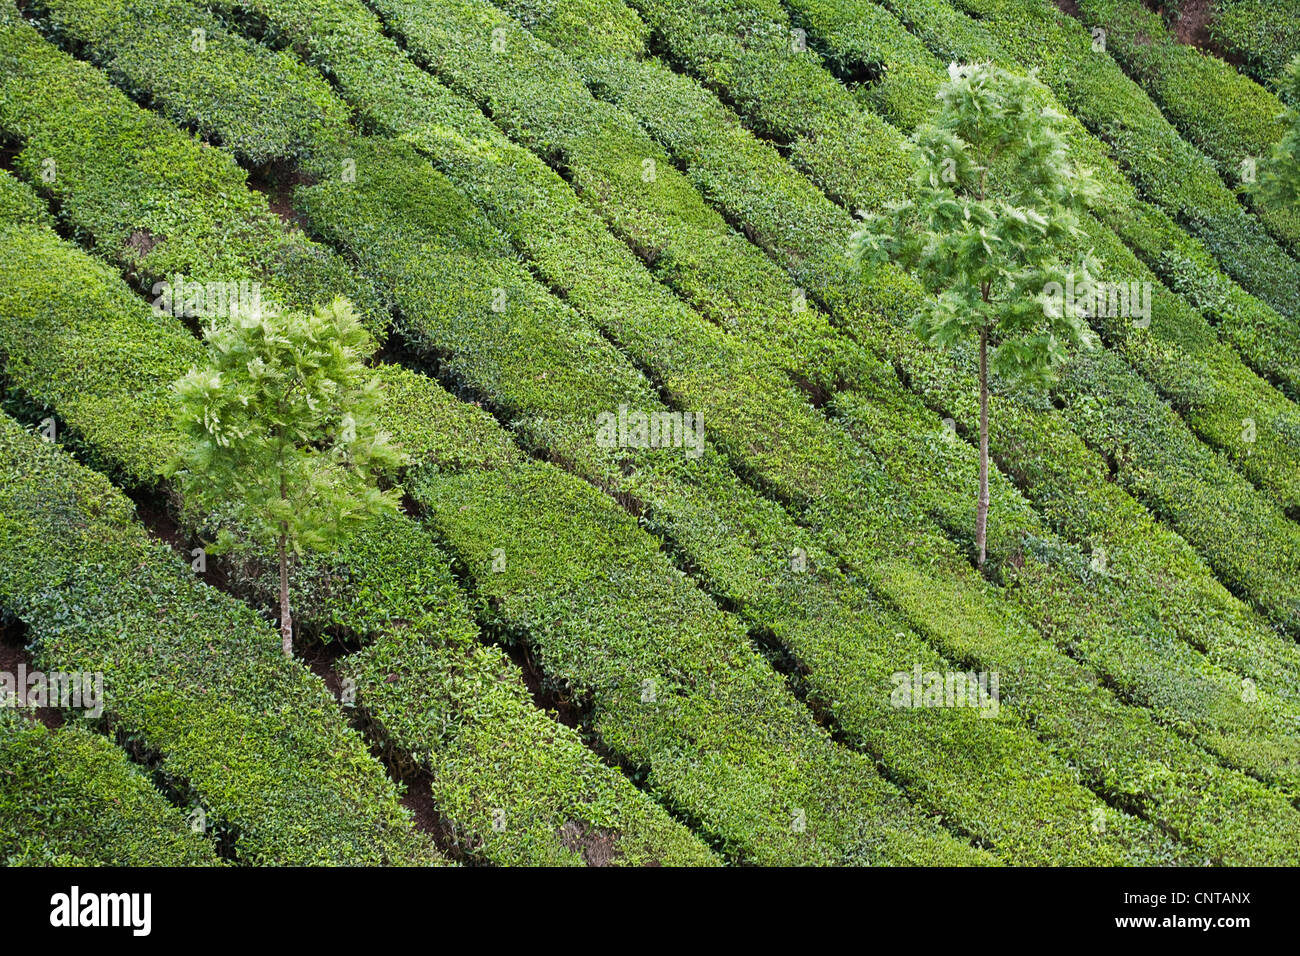 La plantation de thé, de l'Inde Banque D'Images